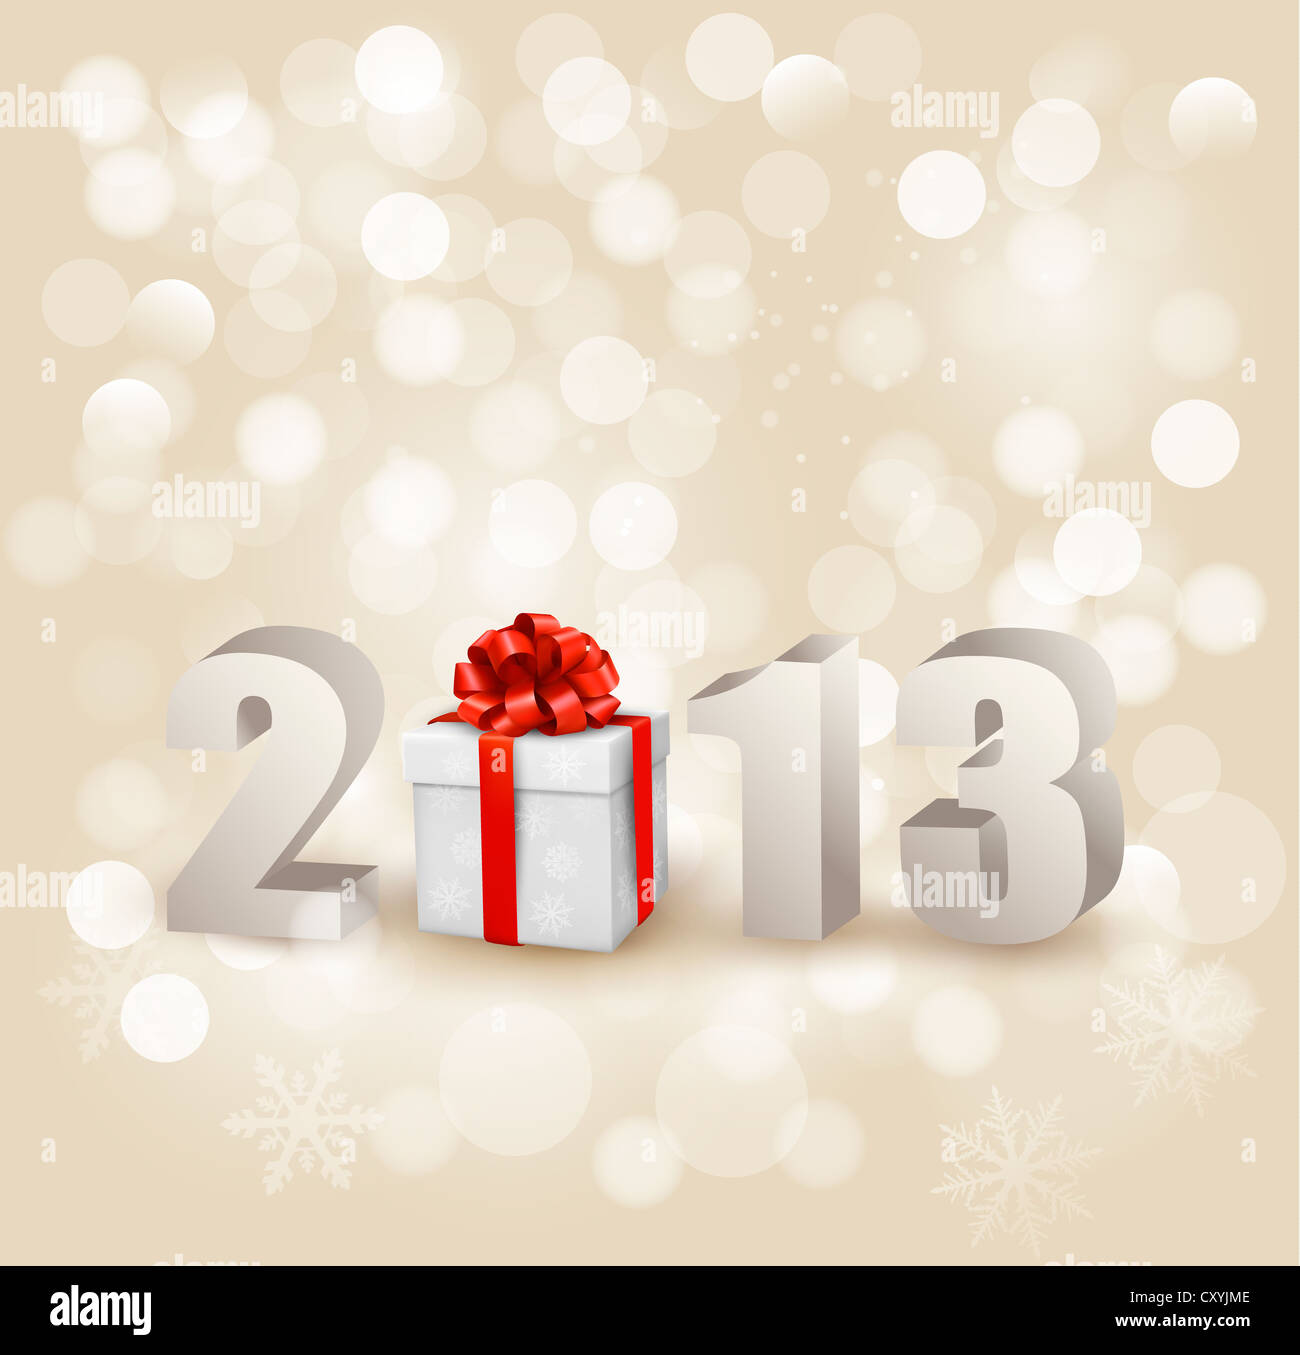 Frohes neues Jahr 2013! Neujahr-Design-Vorlage. Stockfoto